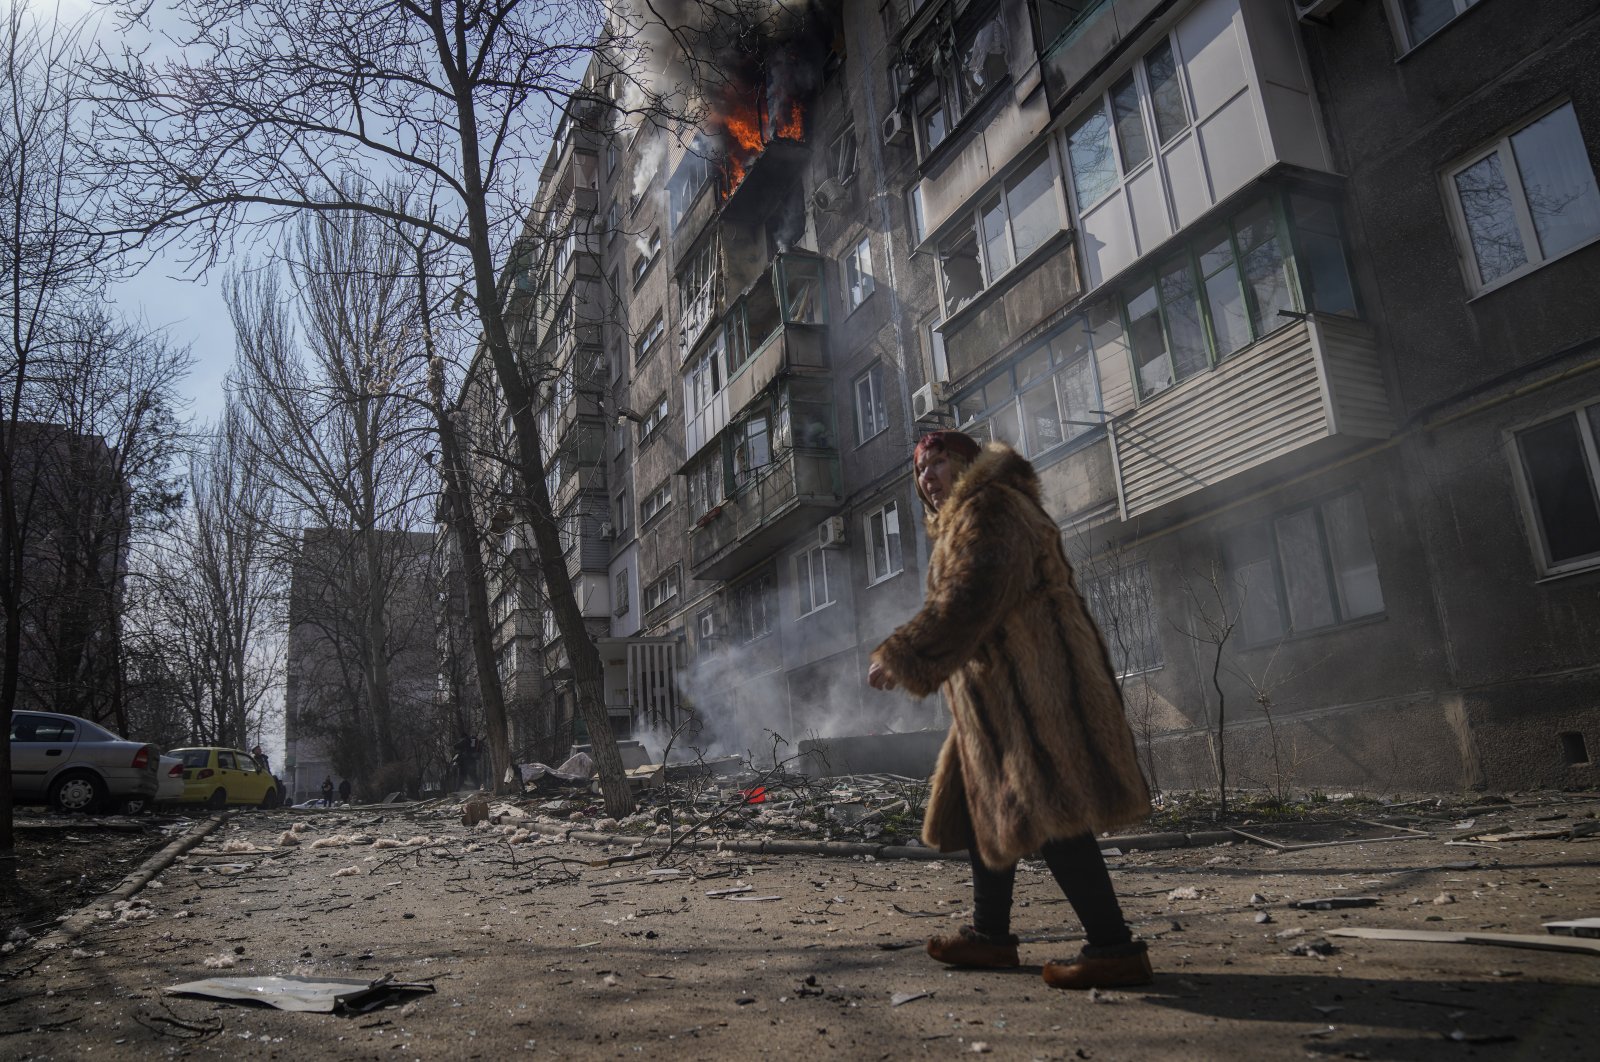 Serangan balasan untuk merebut kembali wilayah selatan yang dikuasai Rusia dimulai: Ukraina